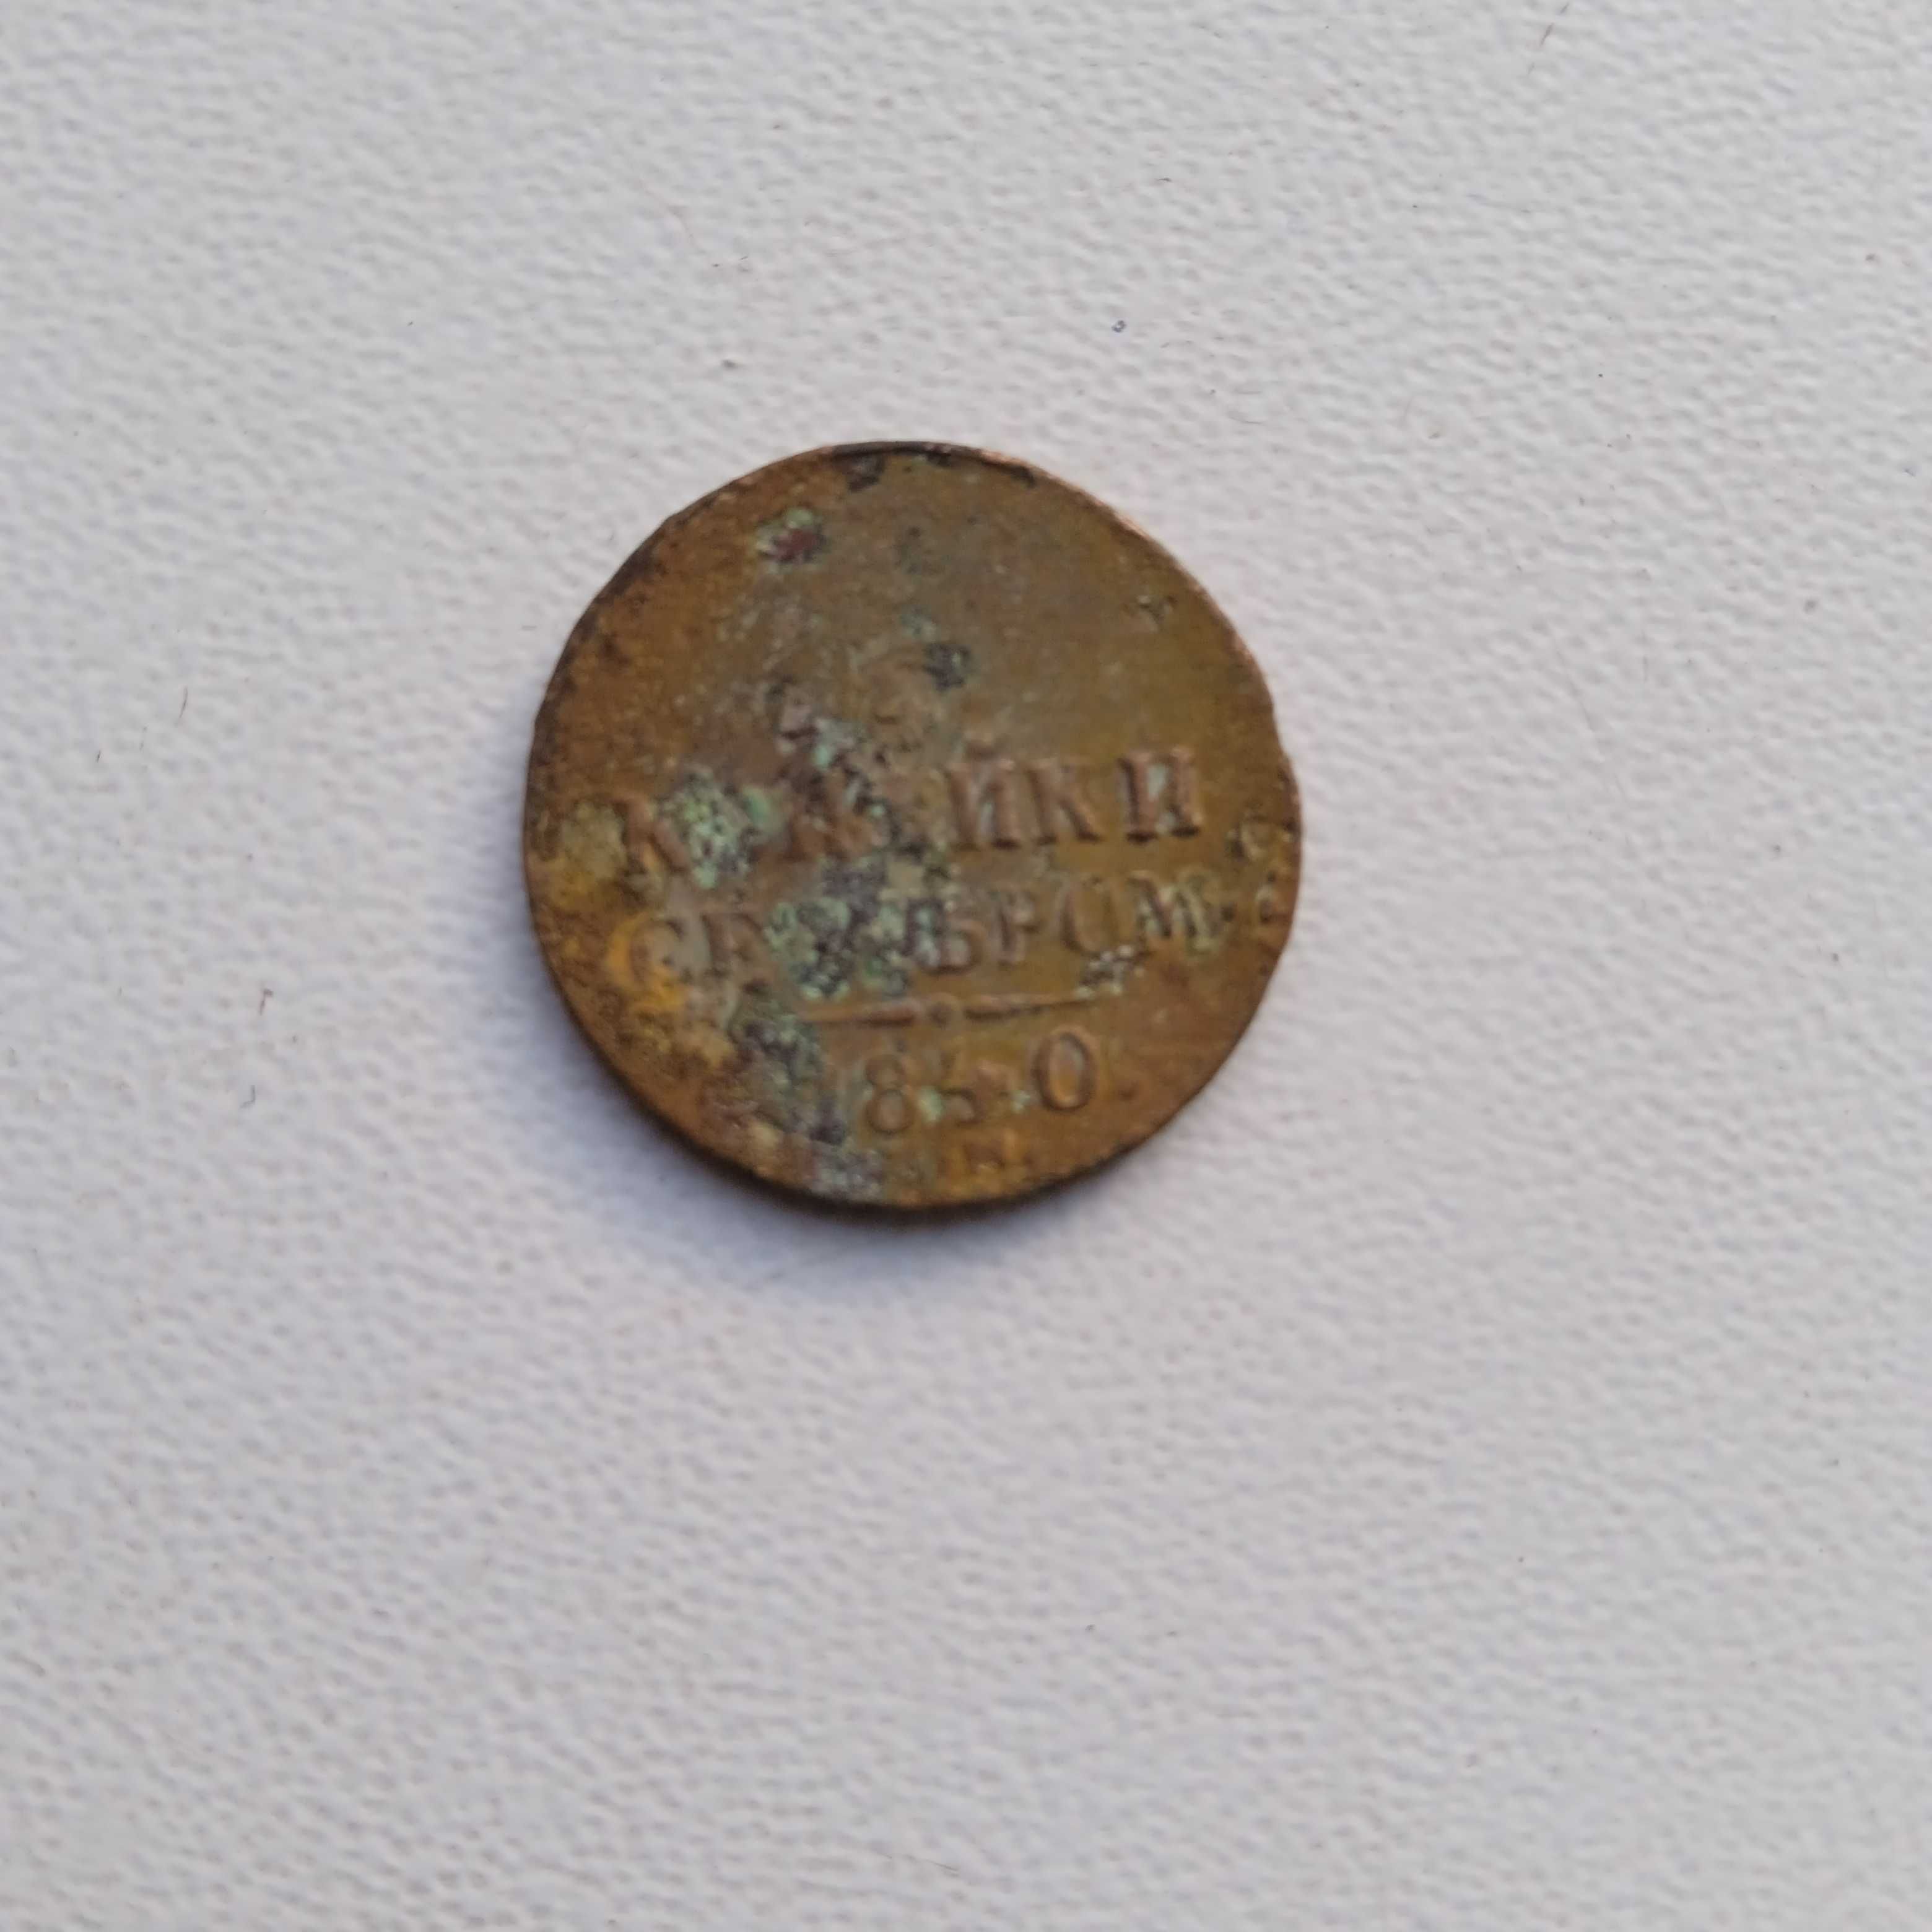 монети рос імперії 1/2 коп срібло 1840 р, 1/4 коп 1896р мідь, 10 монет